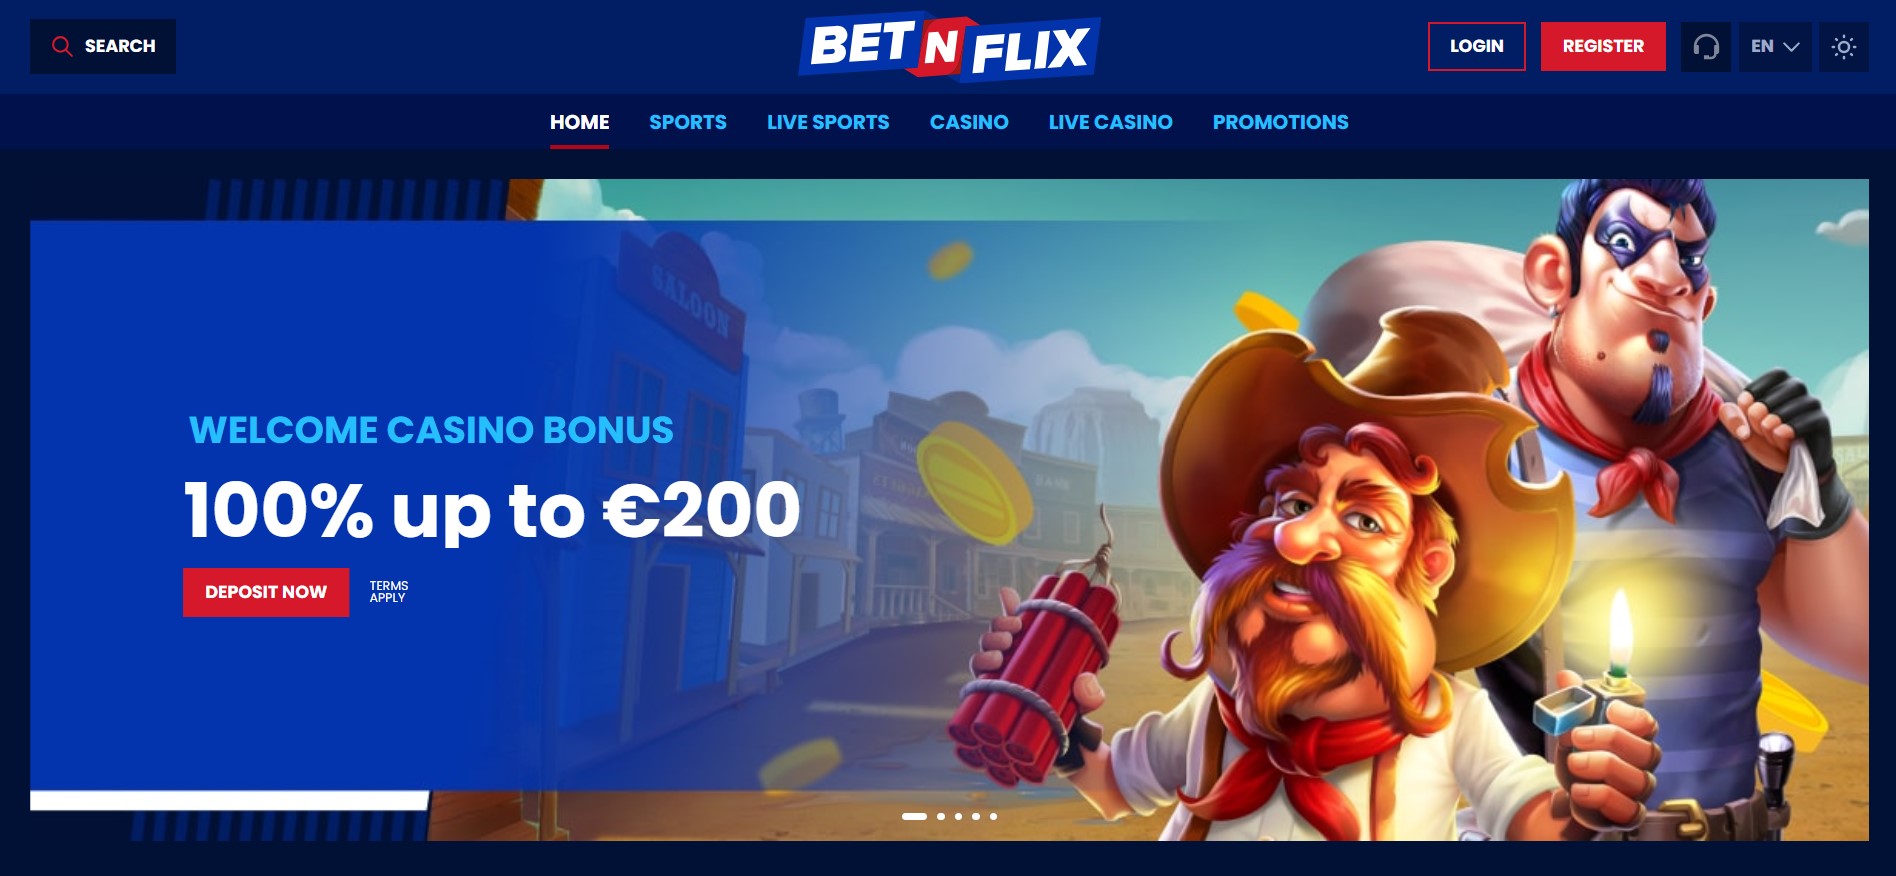 BetNFlix Online Casino 1